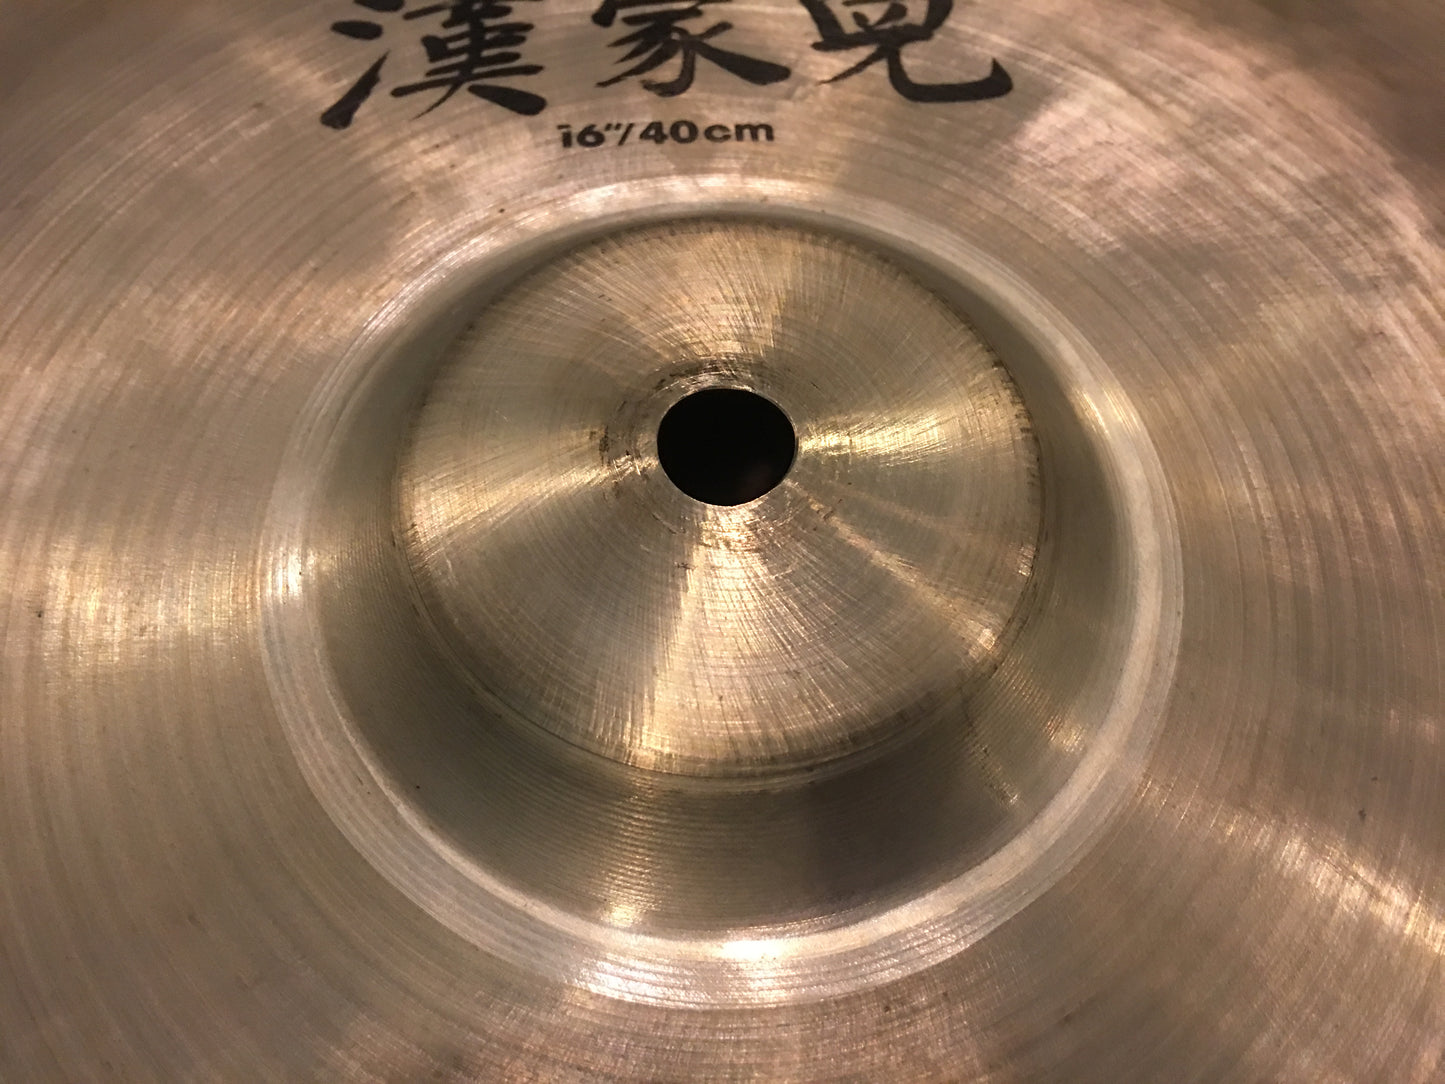 16" Zildjian A China Boy High Cymbal 880g